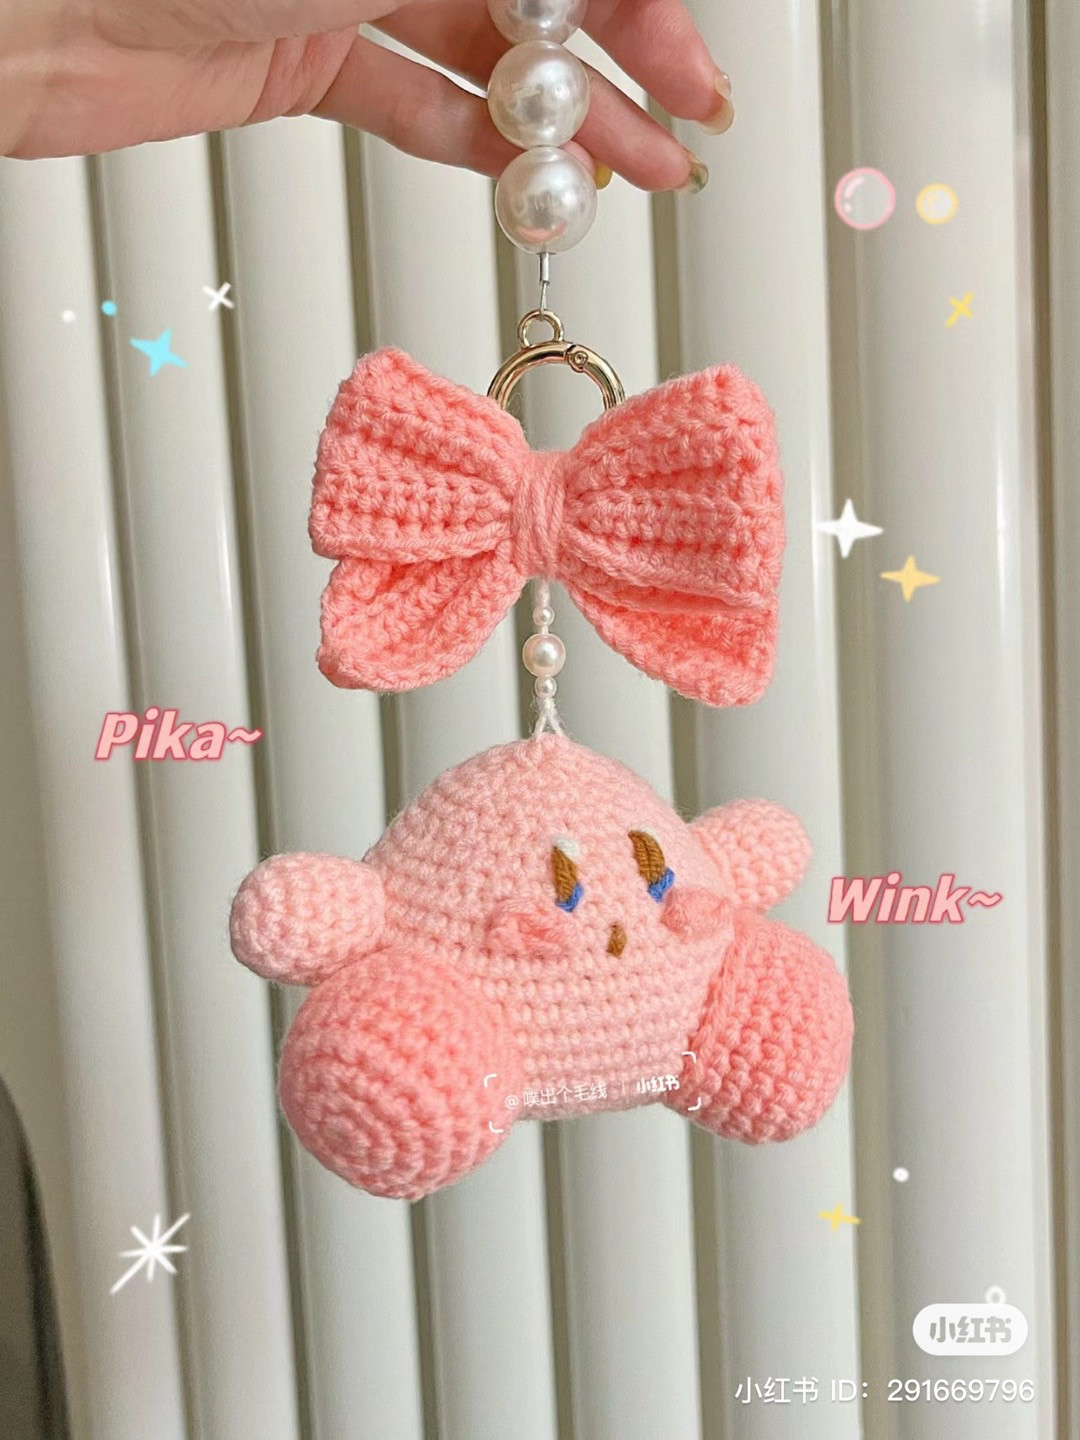 Pink kirby crochet pattern